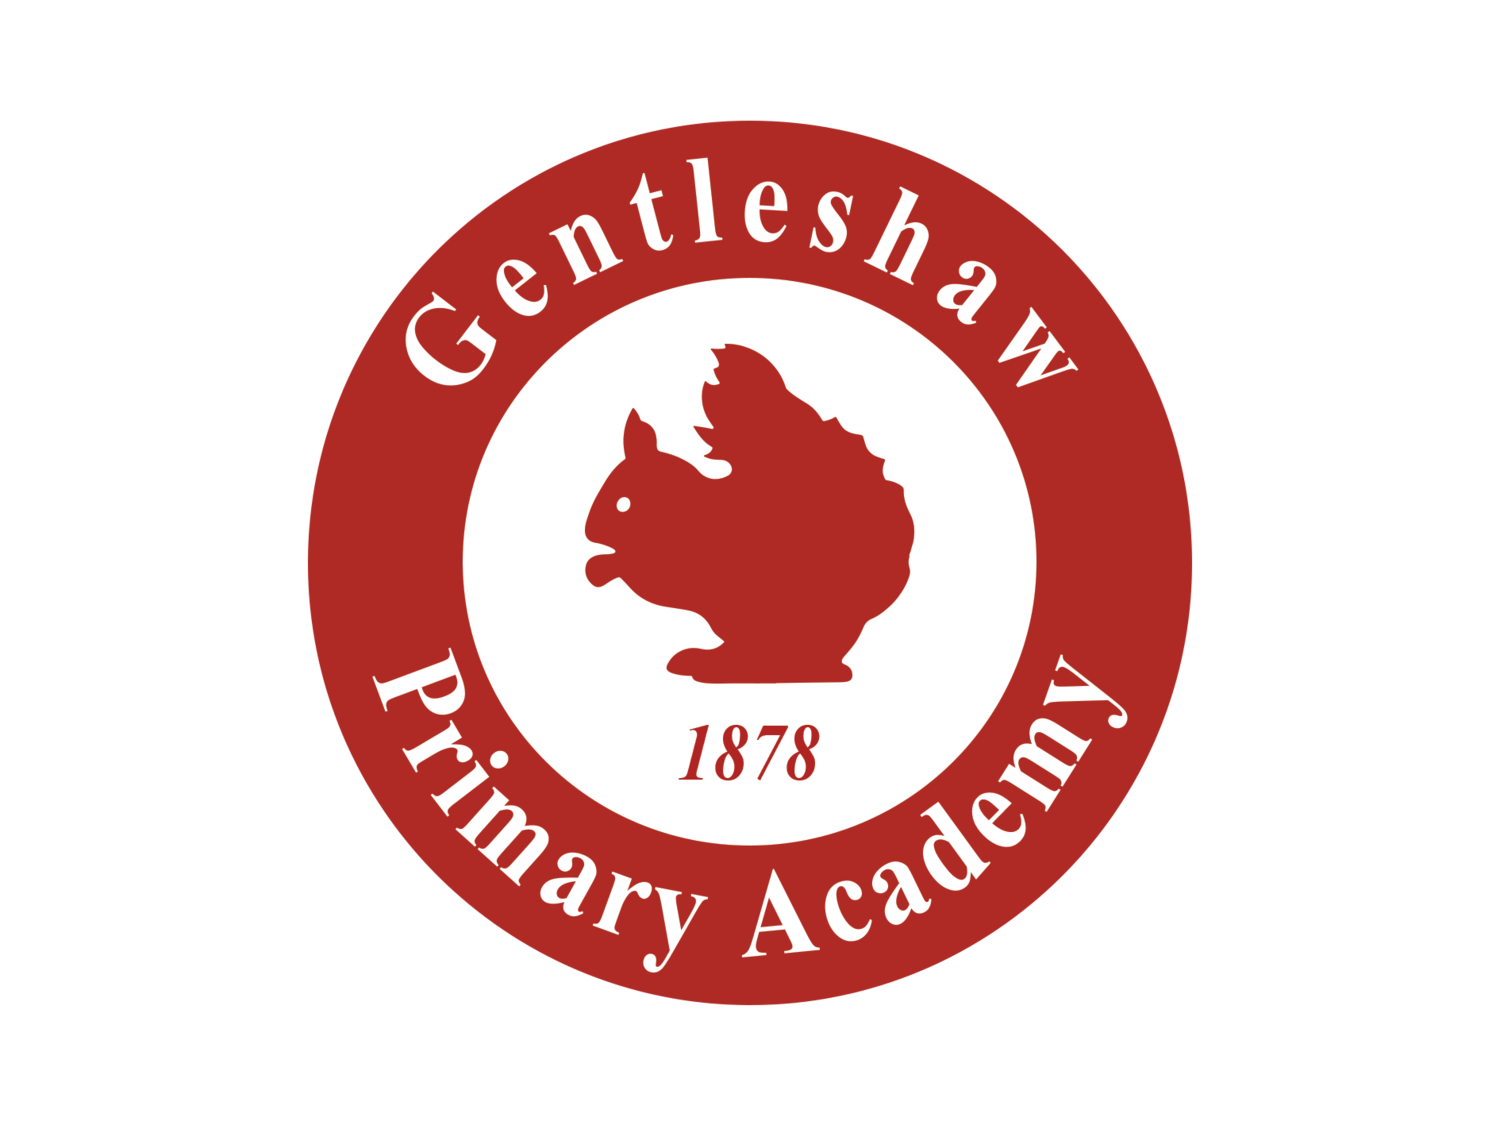 Gentleshaw Primary Academy